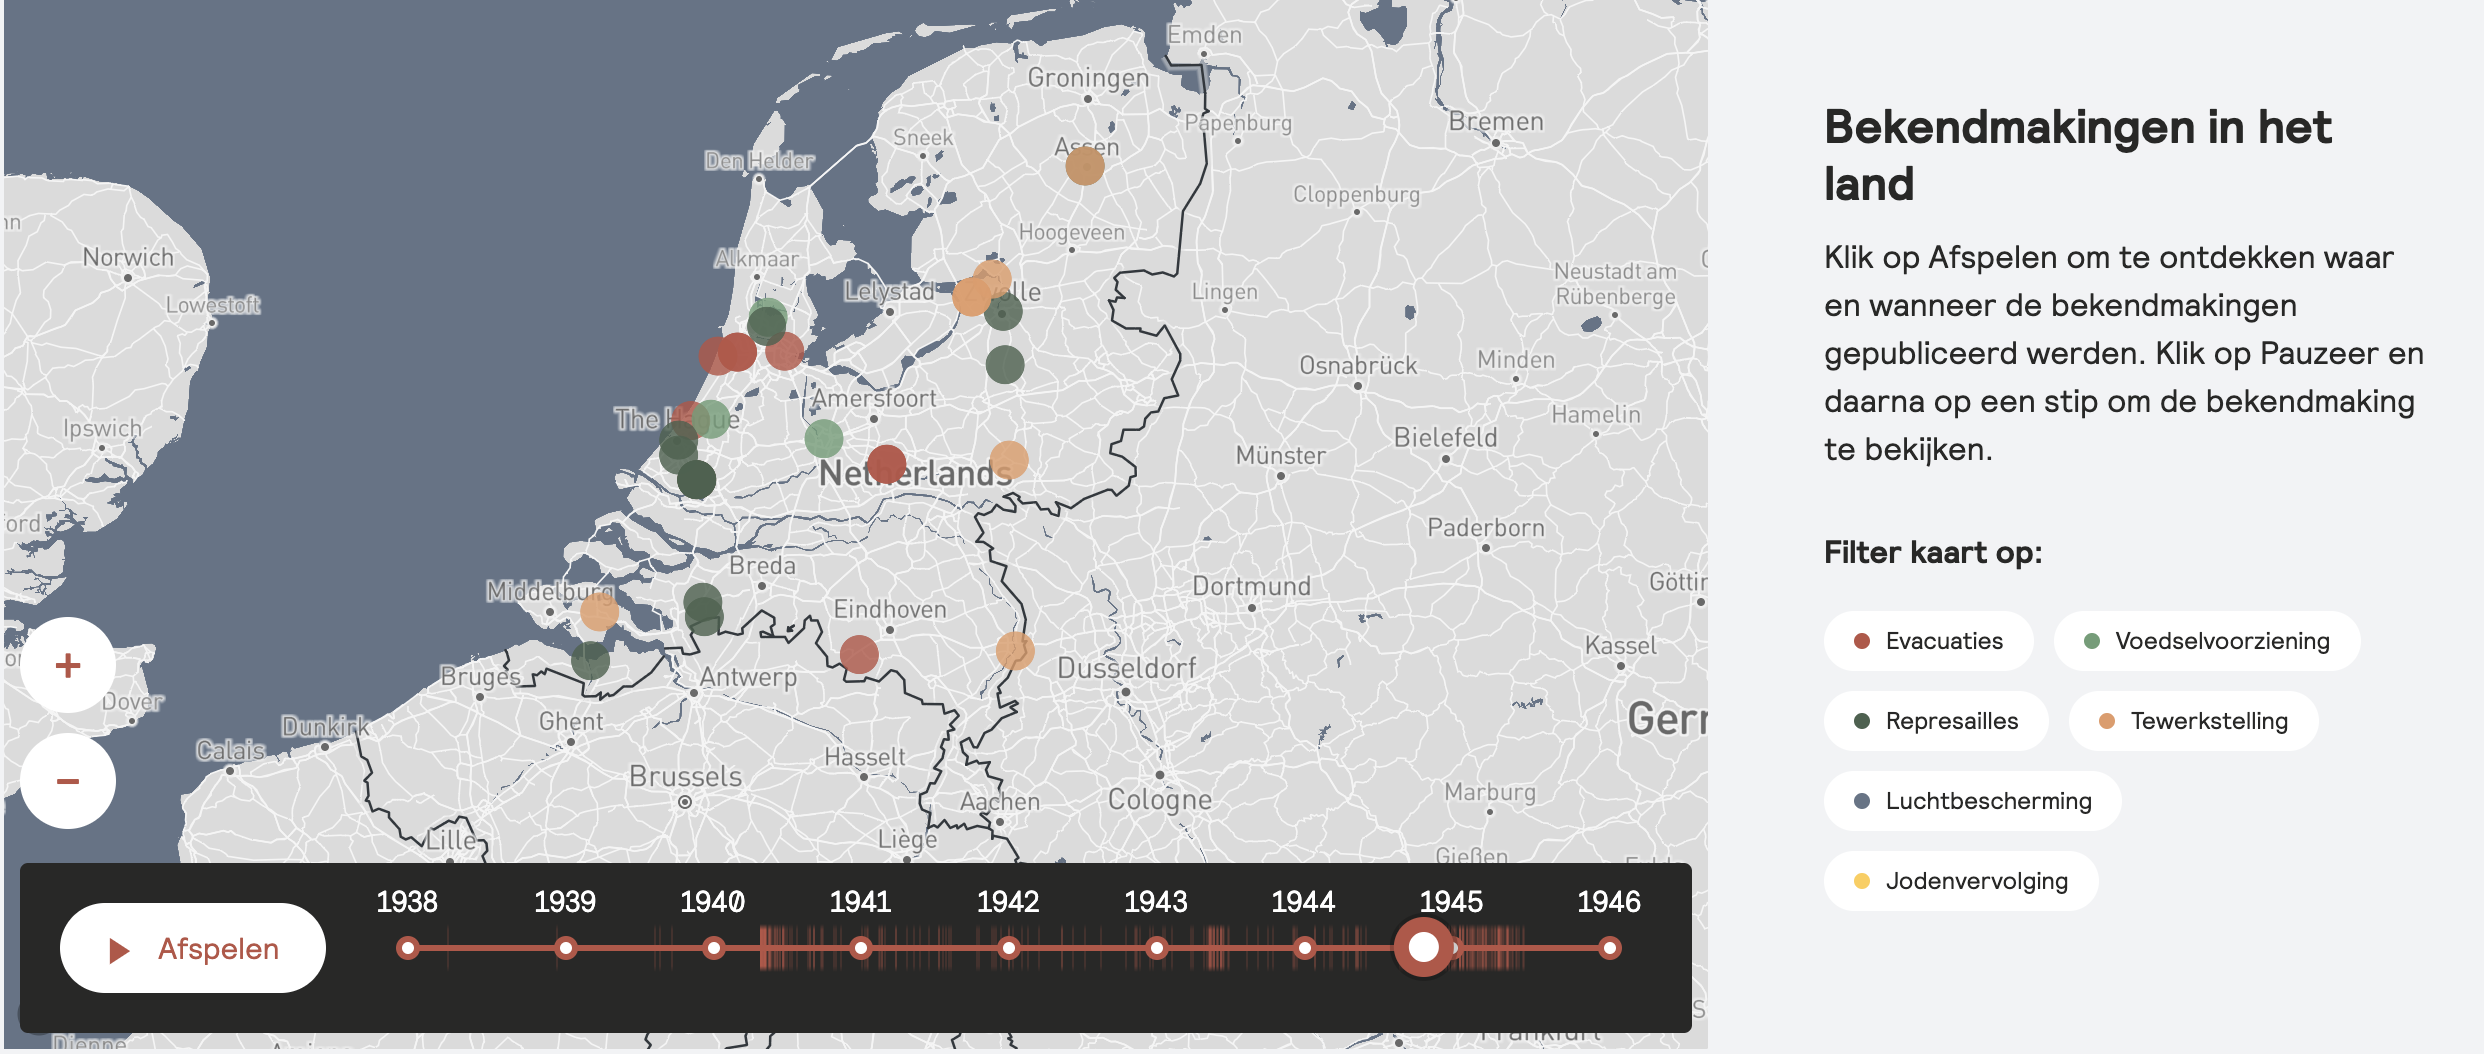 Gepubliceerde bekendmakingen op de kaart van Nederland overzichtelijk gemaakt. Elke categorie heeft een kleur, zodat bij bijvoorbeeld de bekendmakingen over ‘Represailles’ alleen de donkergroene bolletjes zichtbaar worden.